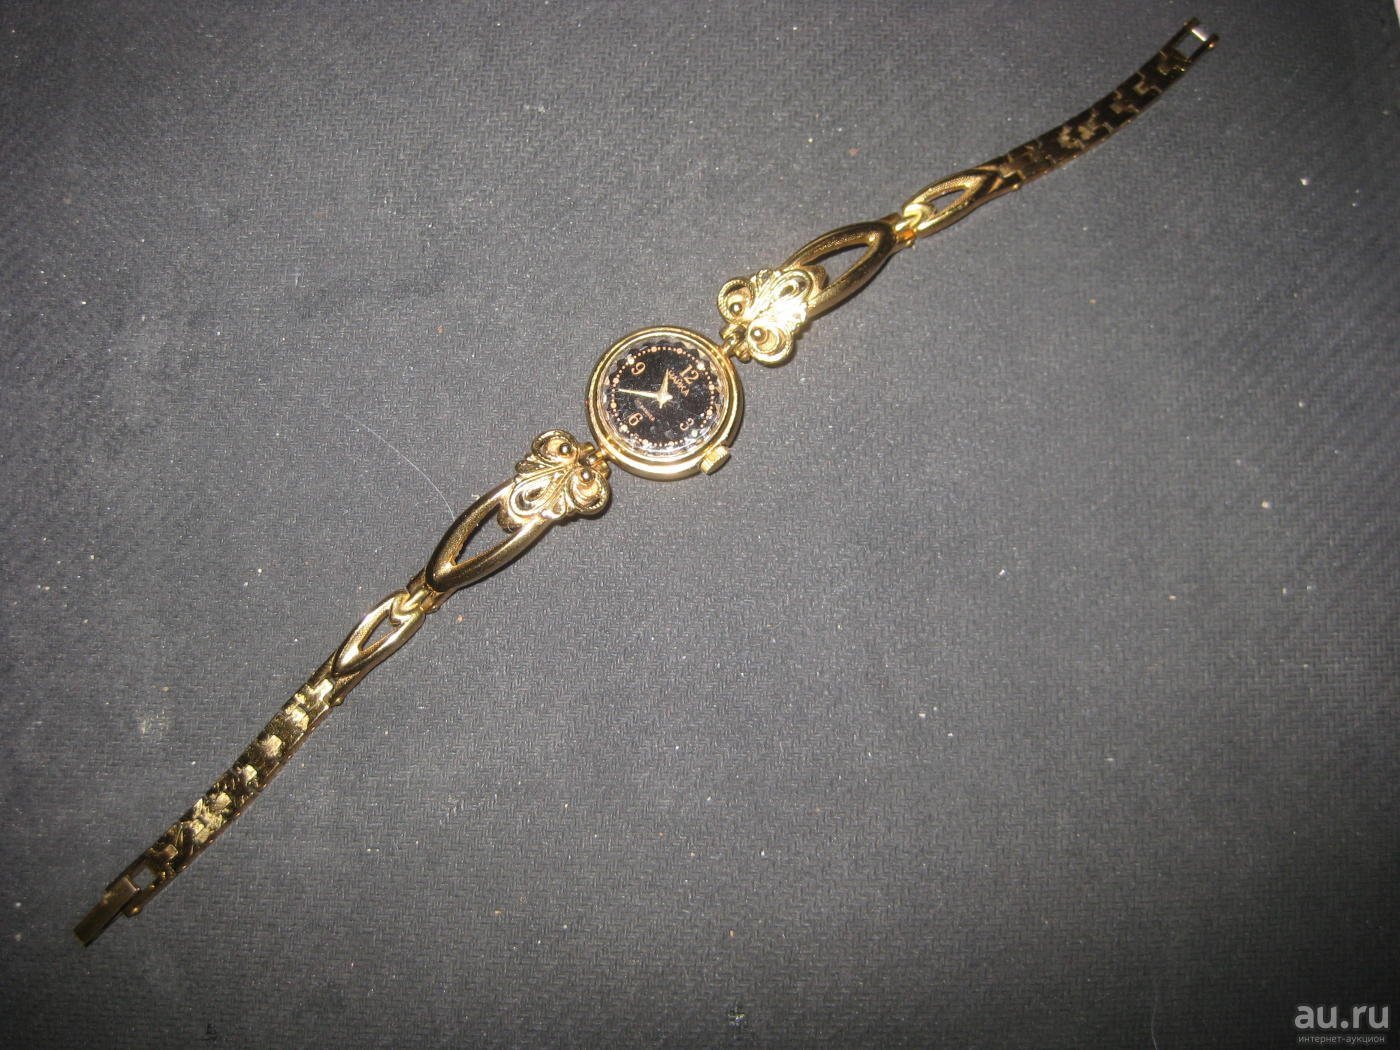 Женские золотые часы чайка с золотым браслетом. Часы Чайка 1601а. Часы Чайка 17 камней. Часы Чайка 17 камней женские. Часы Чайка 17 камней с янтарным браслетом.